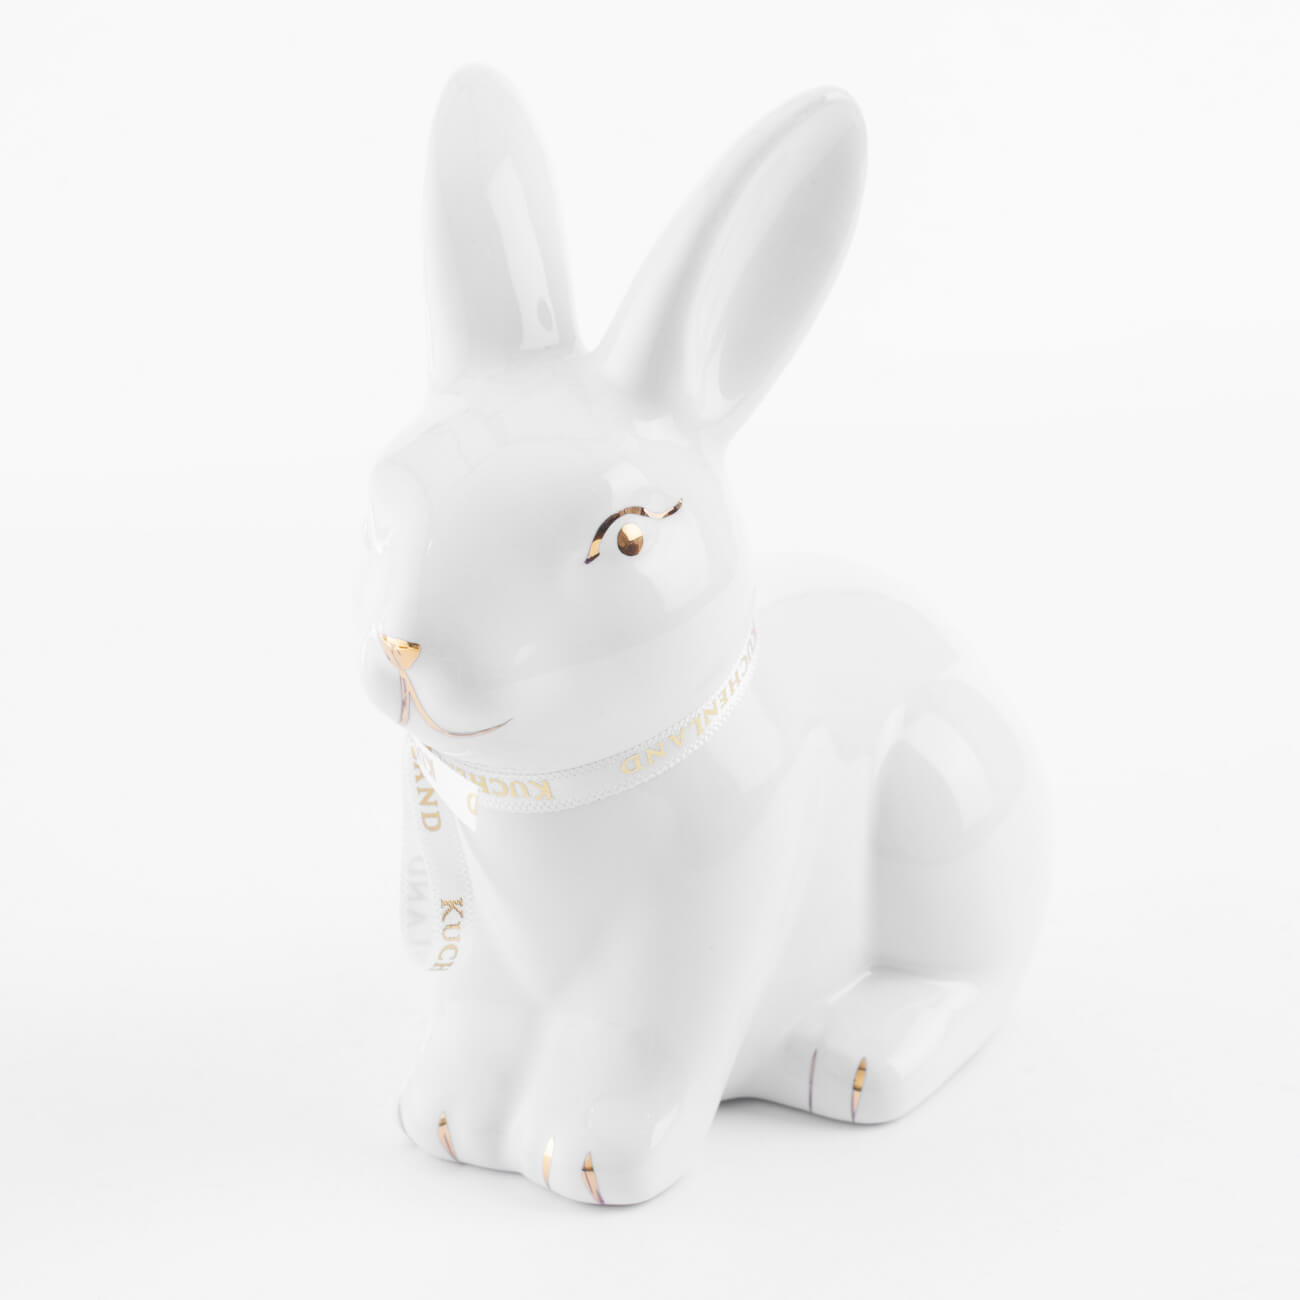 Статуэтка, 13 см, керамика, бело-золотистая, Кролик сидит, Easter gold статуэтка слон